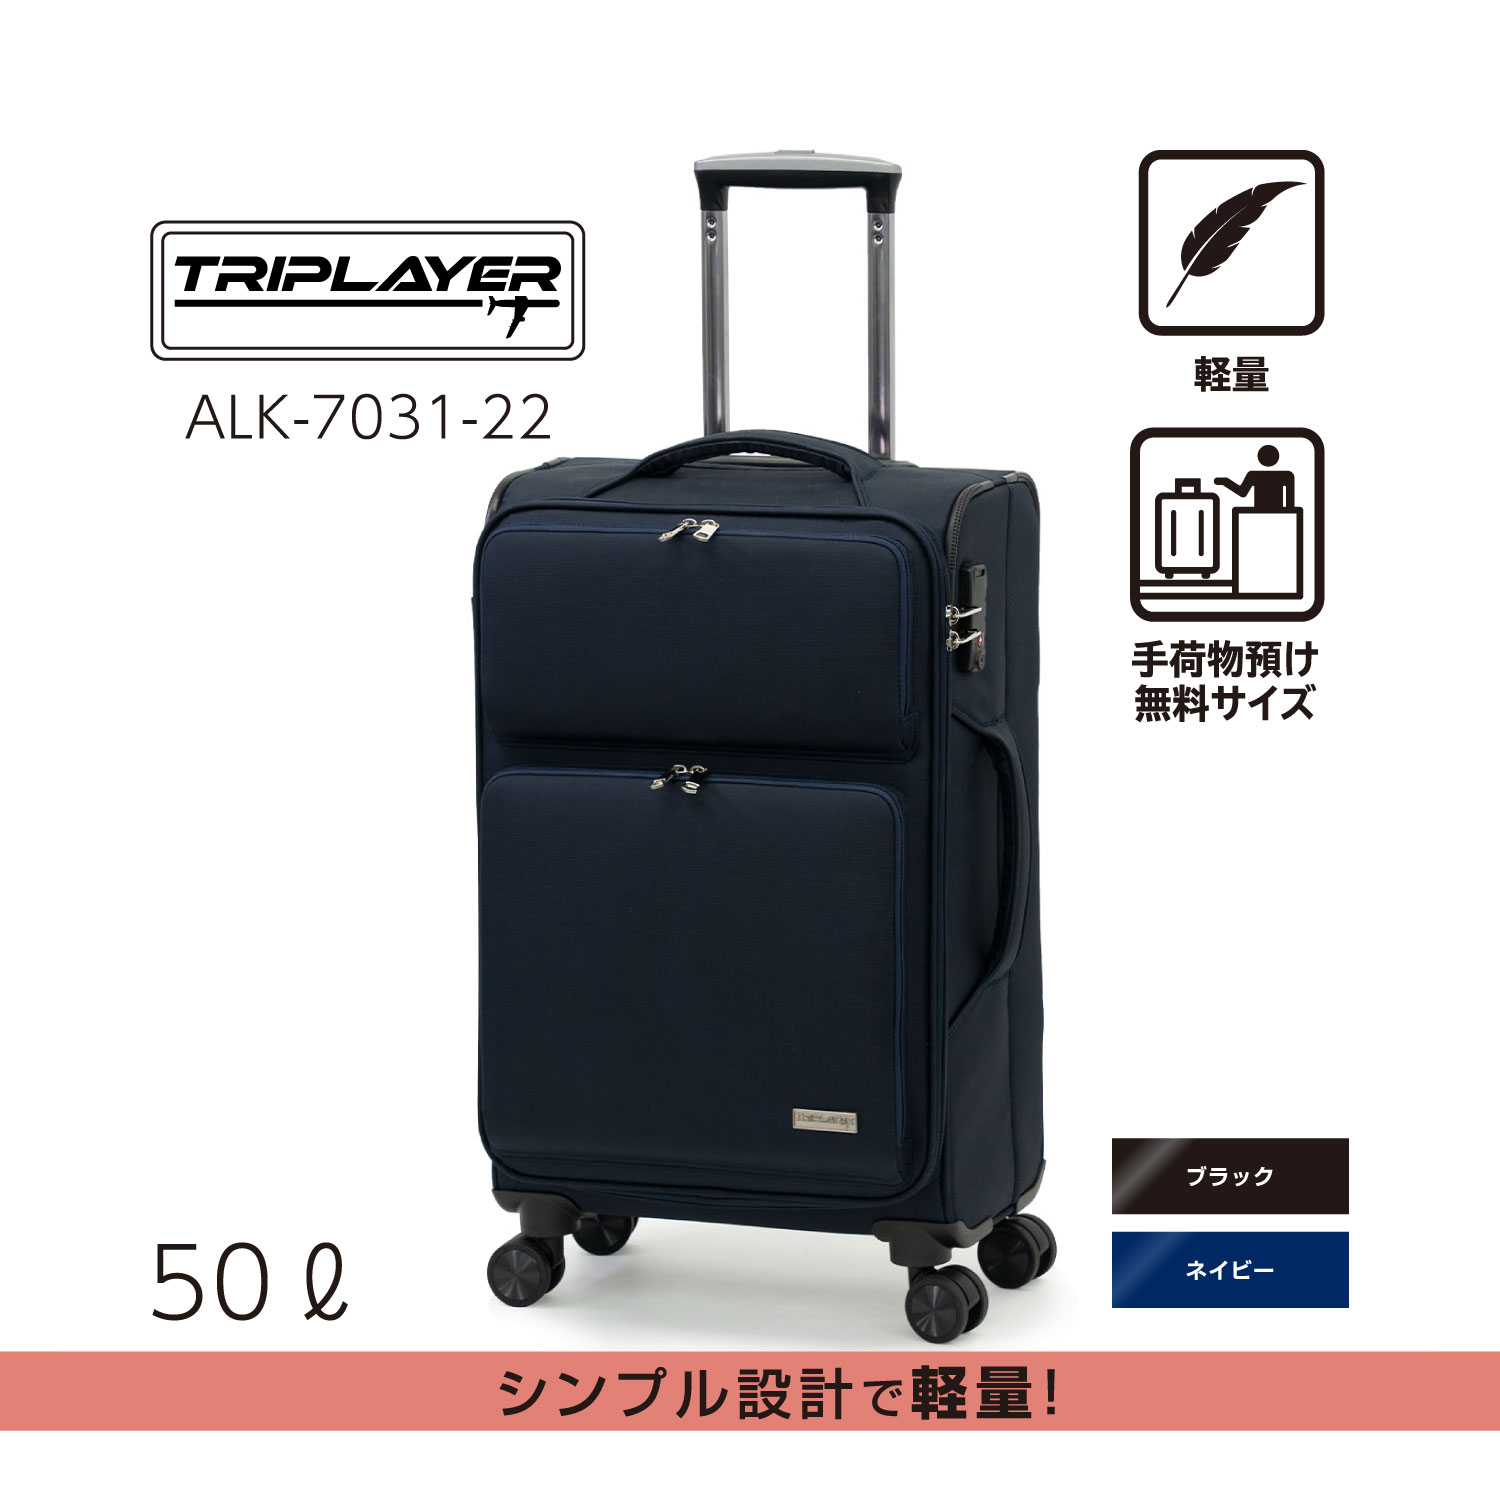 ソフトキャリー | アジア・ラゲージ 公式サイト | Asia Luggage Inc.